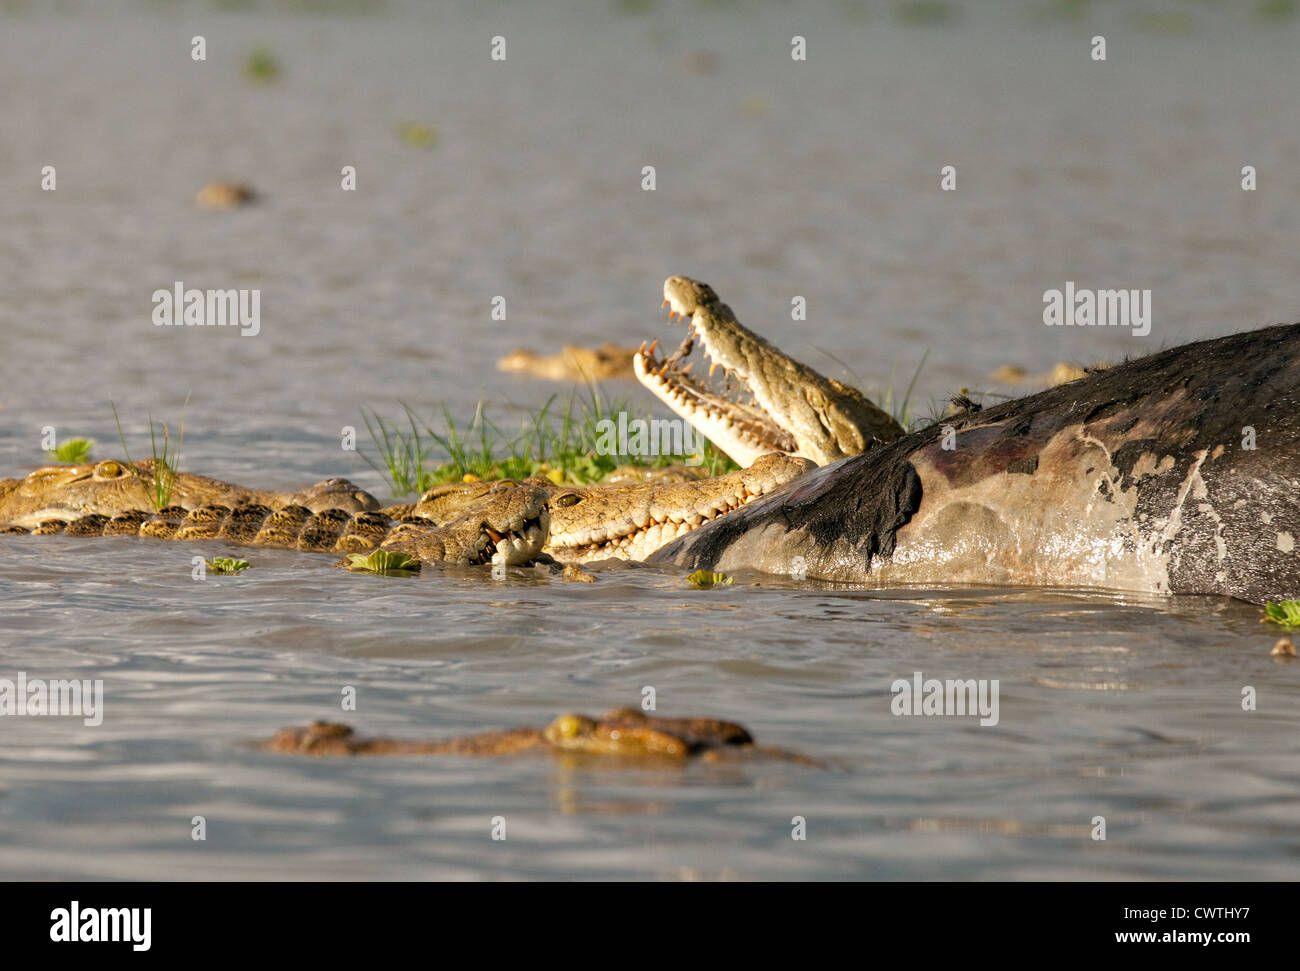 Les crocodiles du Nil qui se nourrissent de la carcasse d'un buffle africain, lac Manze, Selous Tanzanie Afrique Banque D'Images